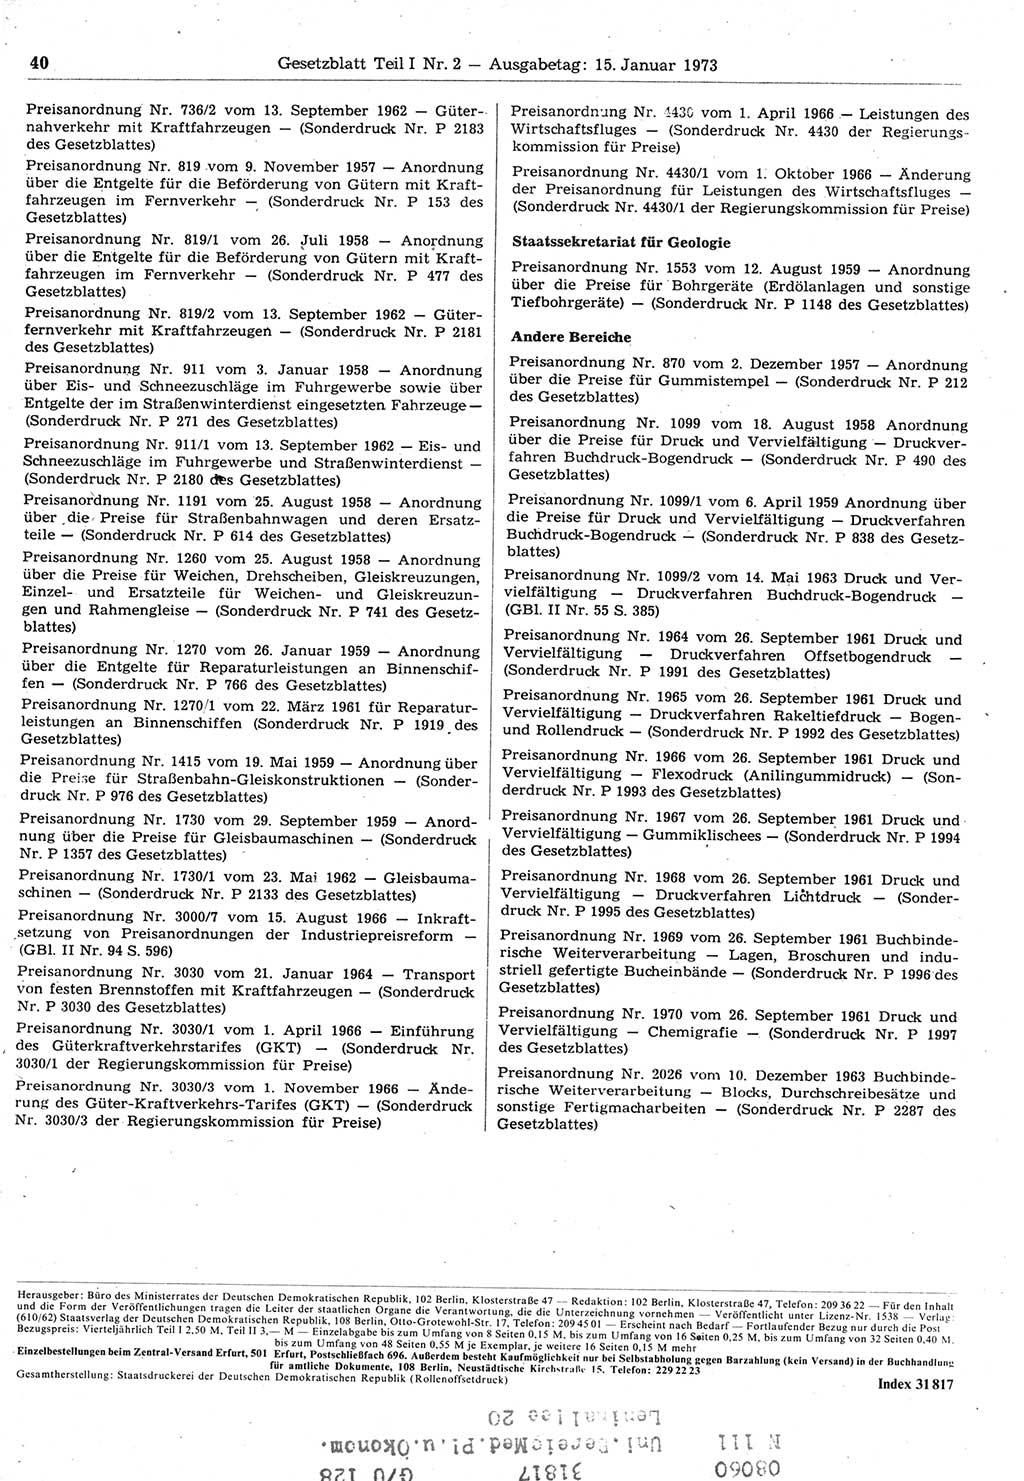 Gesetzblatt (GBl.) der Deutschen Demokratischen Republik (DDR) Teil Ⅰ 1973, Seite 40 (GBl. DDR Ⅰ 1973, S. 40)